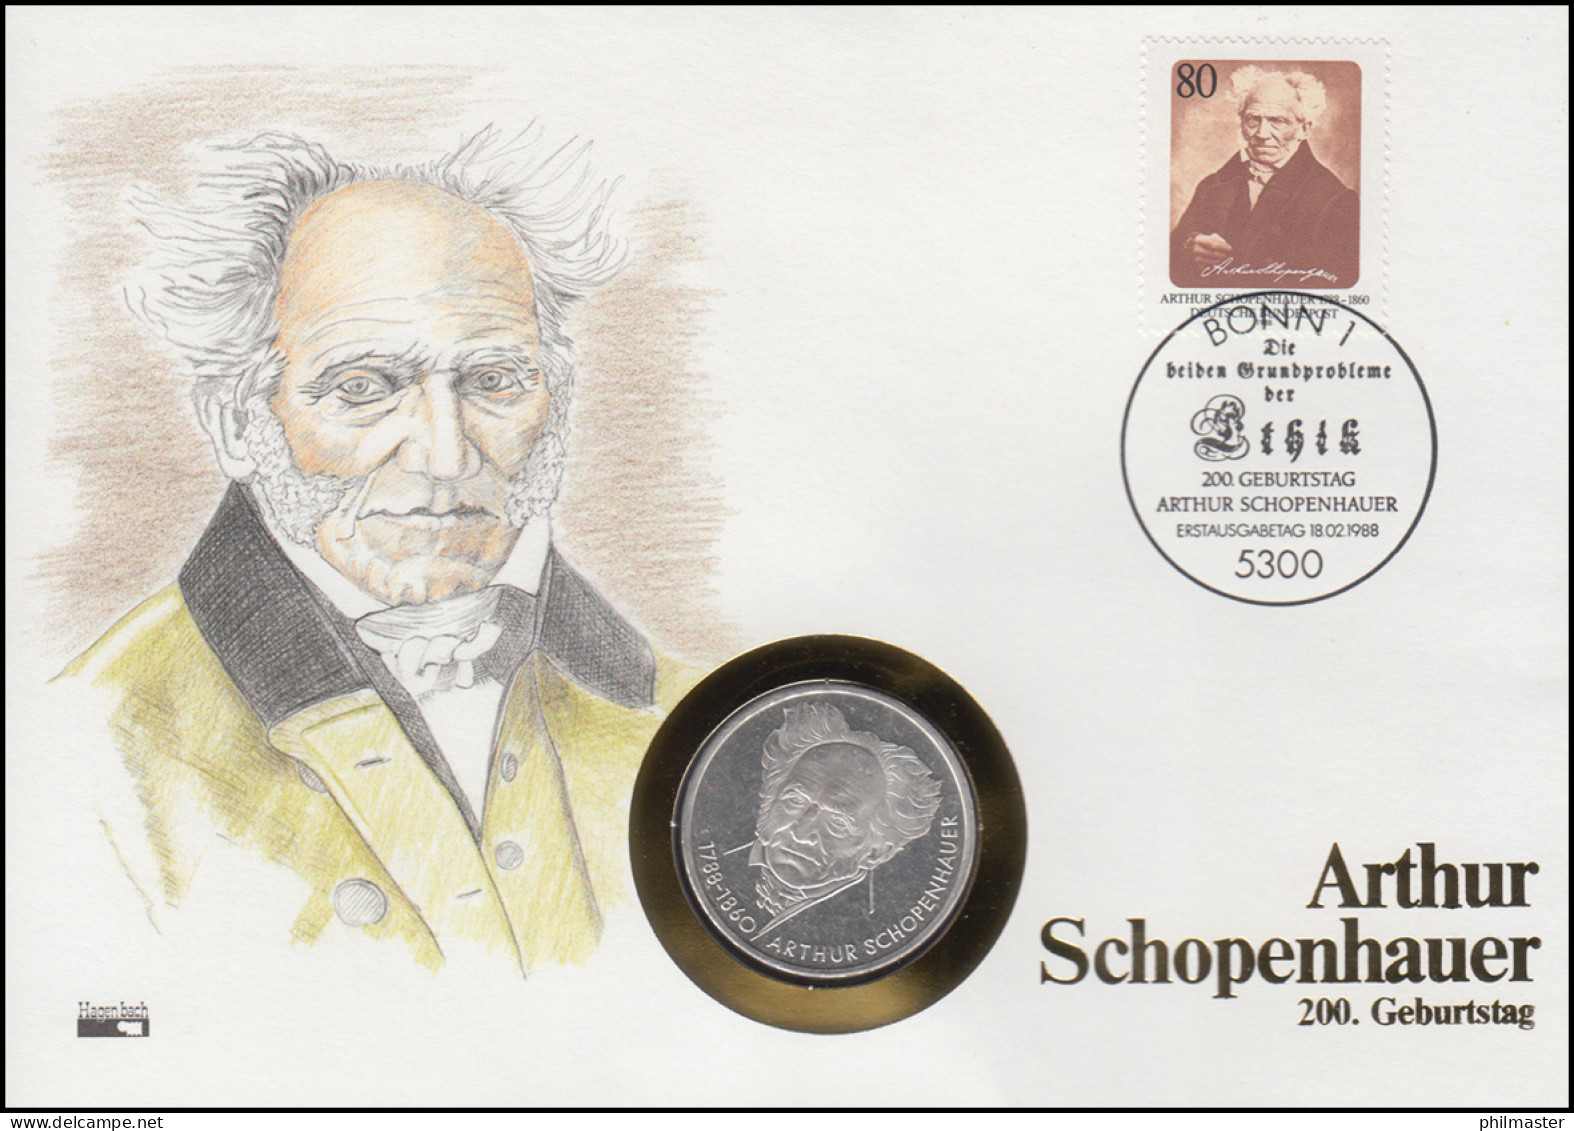 Numisbrief Arthur Schopenhauer, 10 DM / 80 Pf., ESST Bonn 18.2.1988 - Numismatische Enveloppen